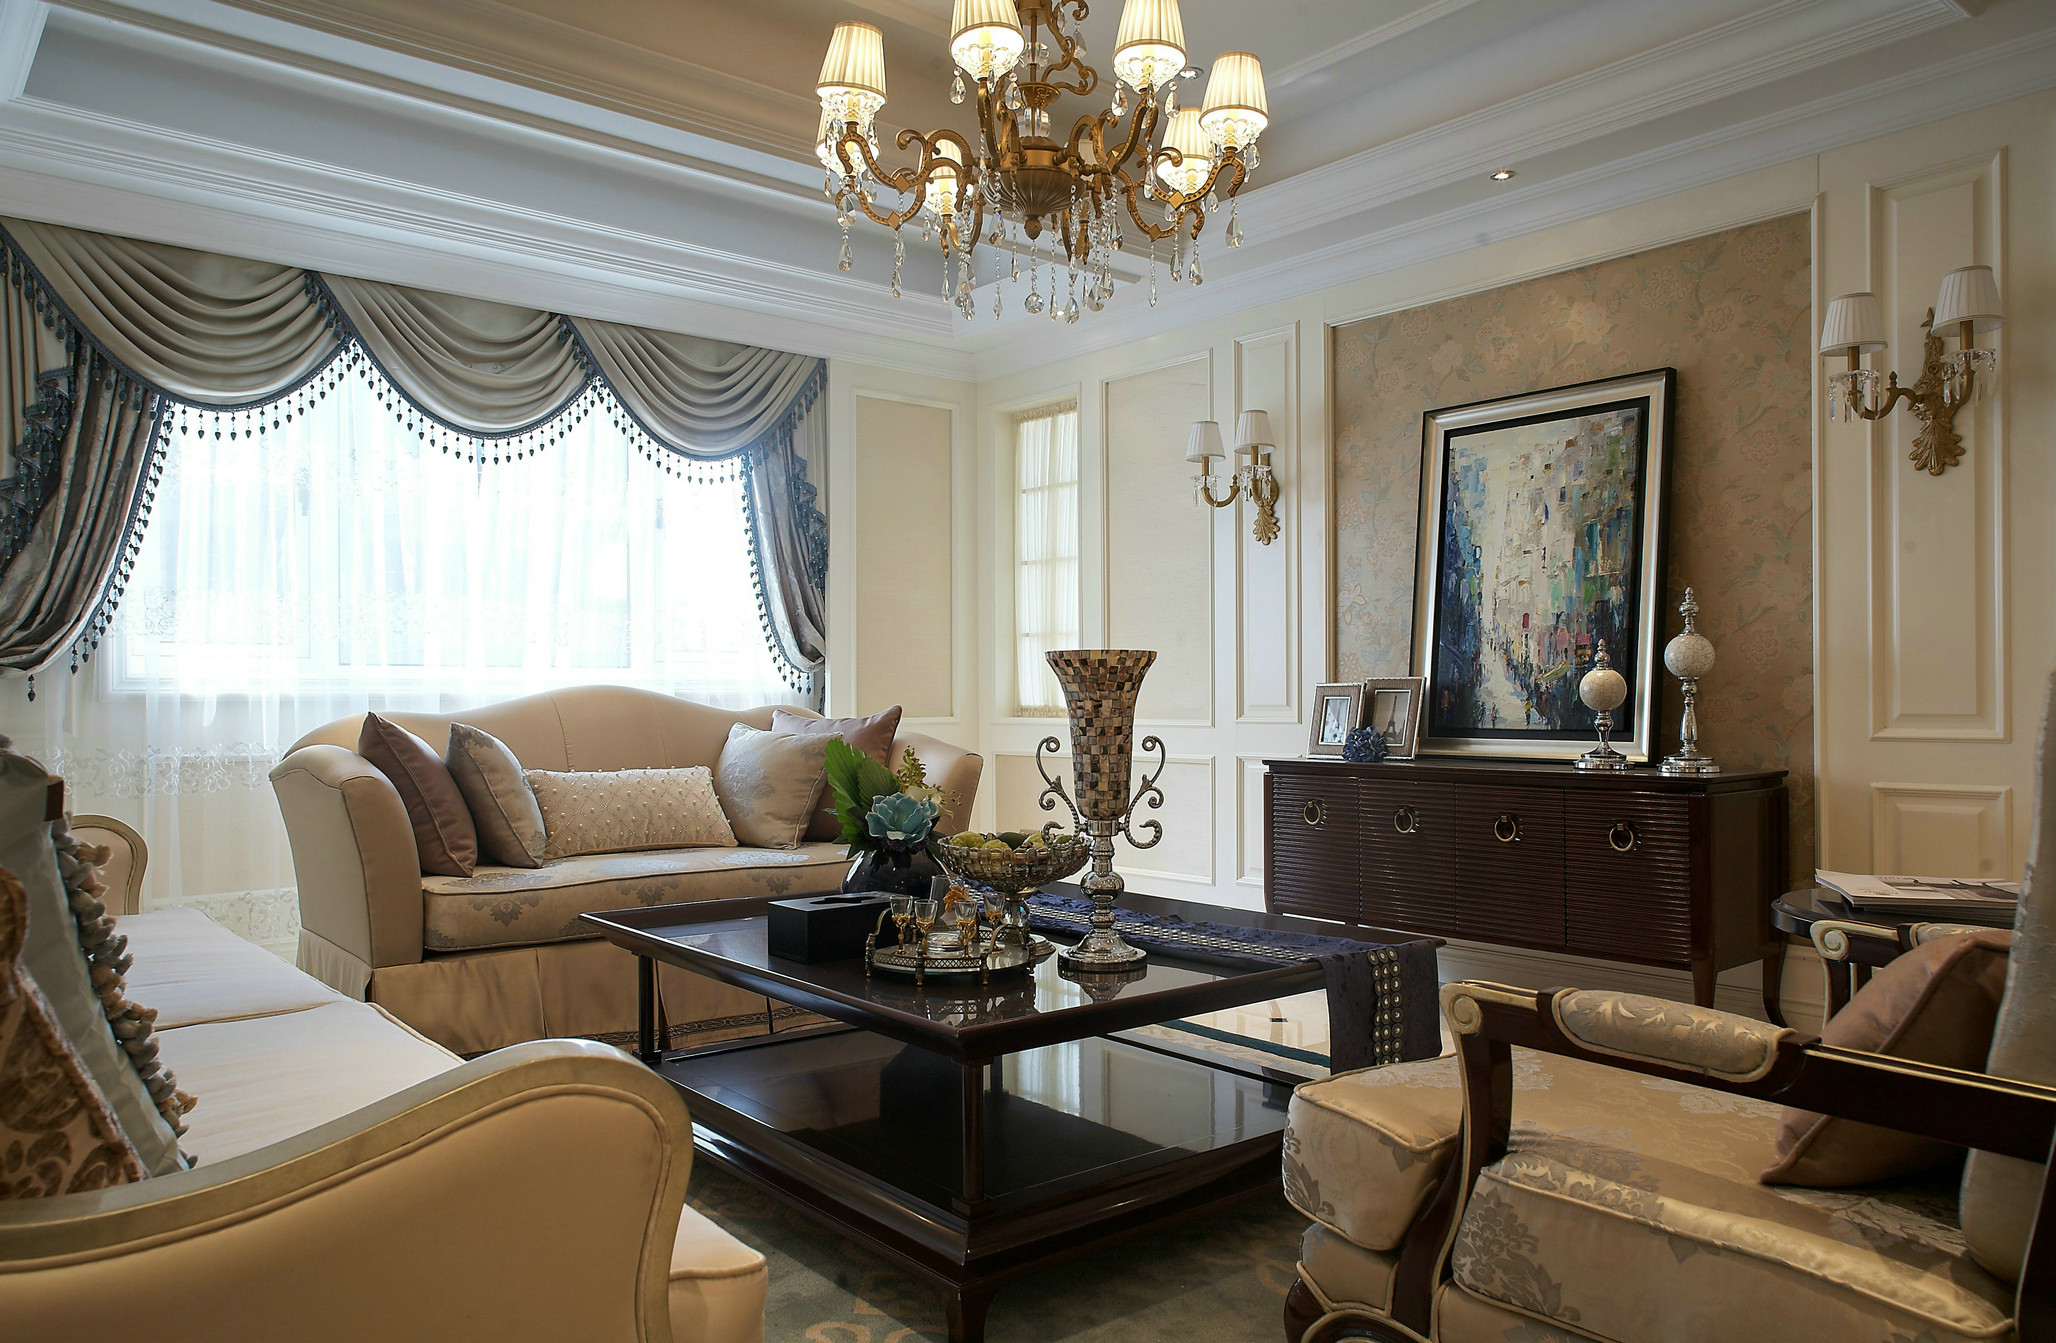 客厅设计是非常欧式化的手法，整个空间以米色为基调，打造出低调的宁静感。